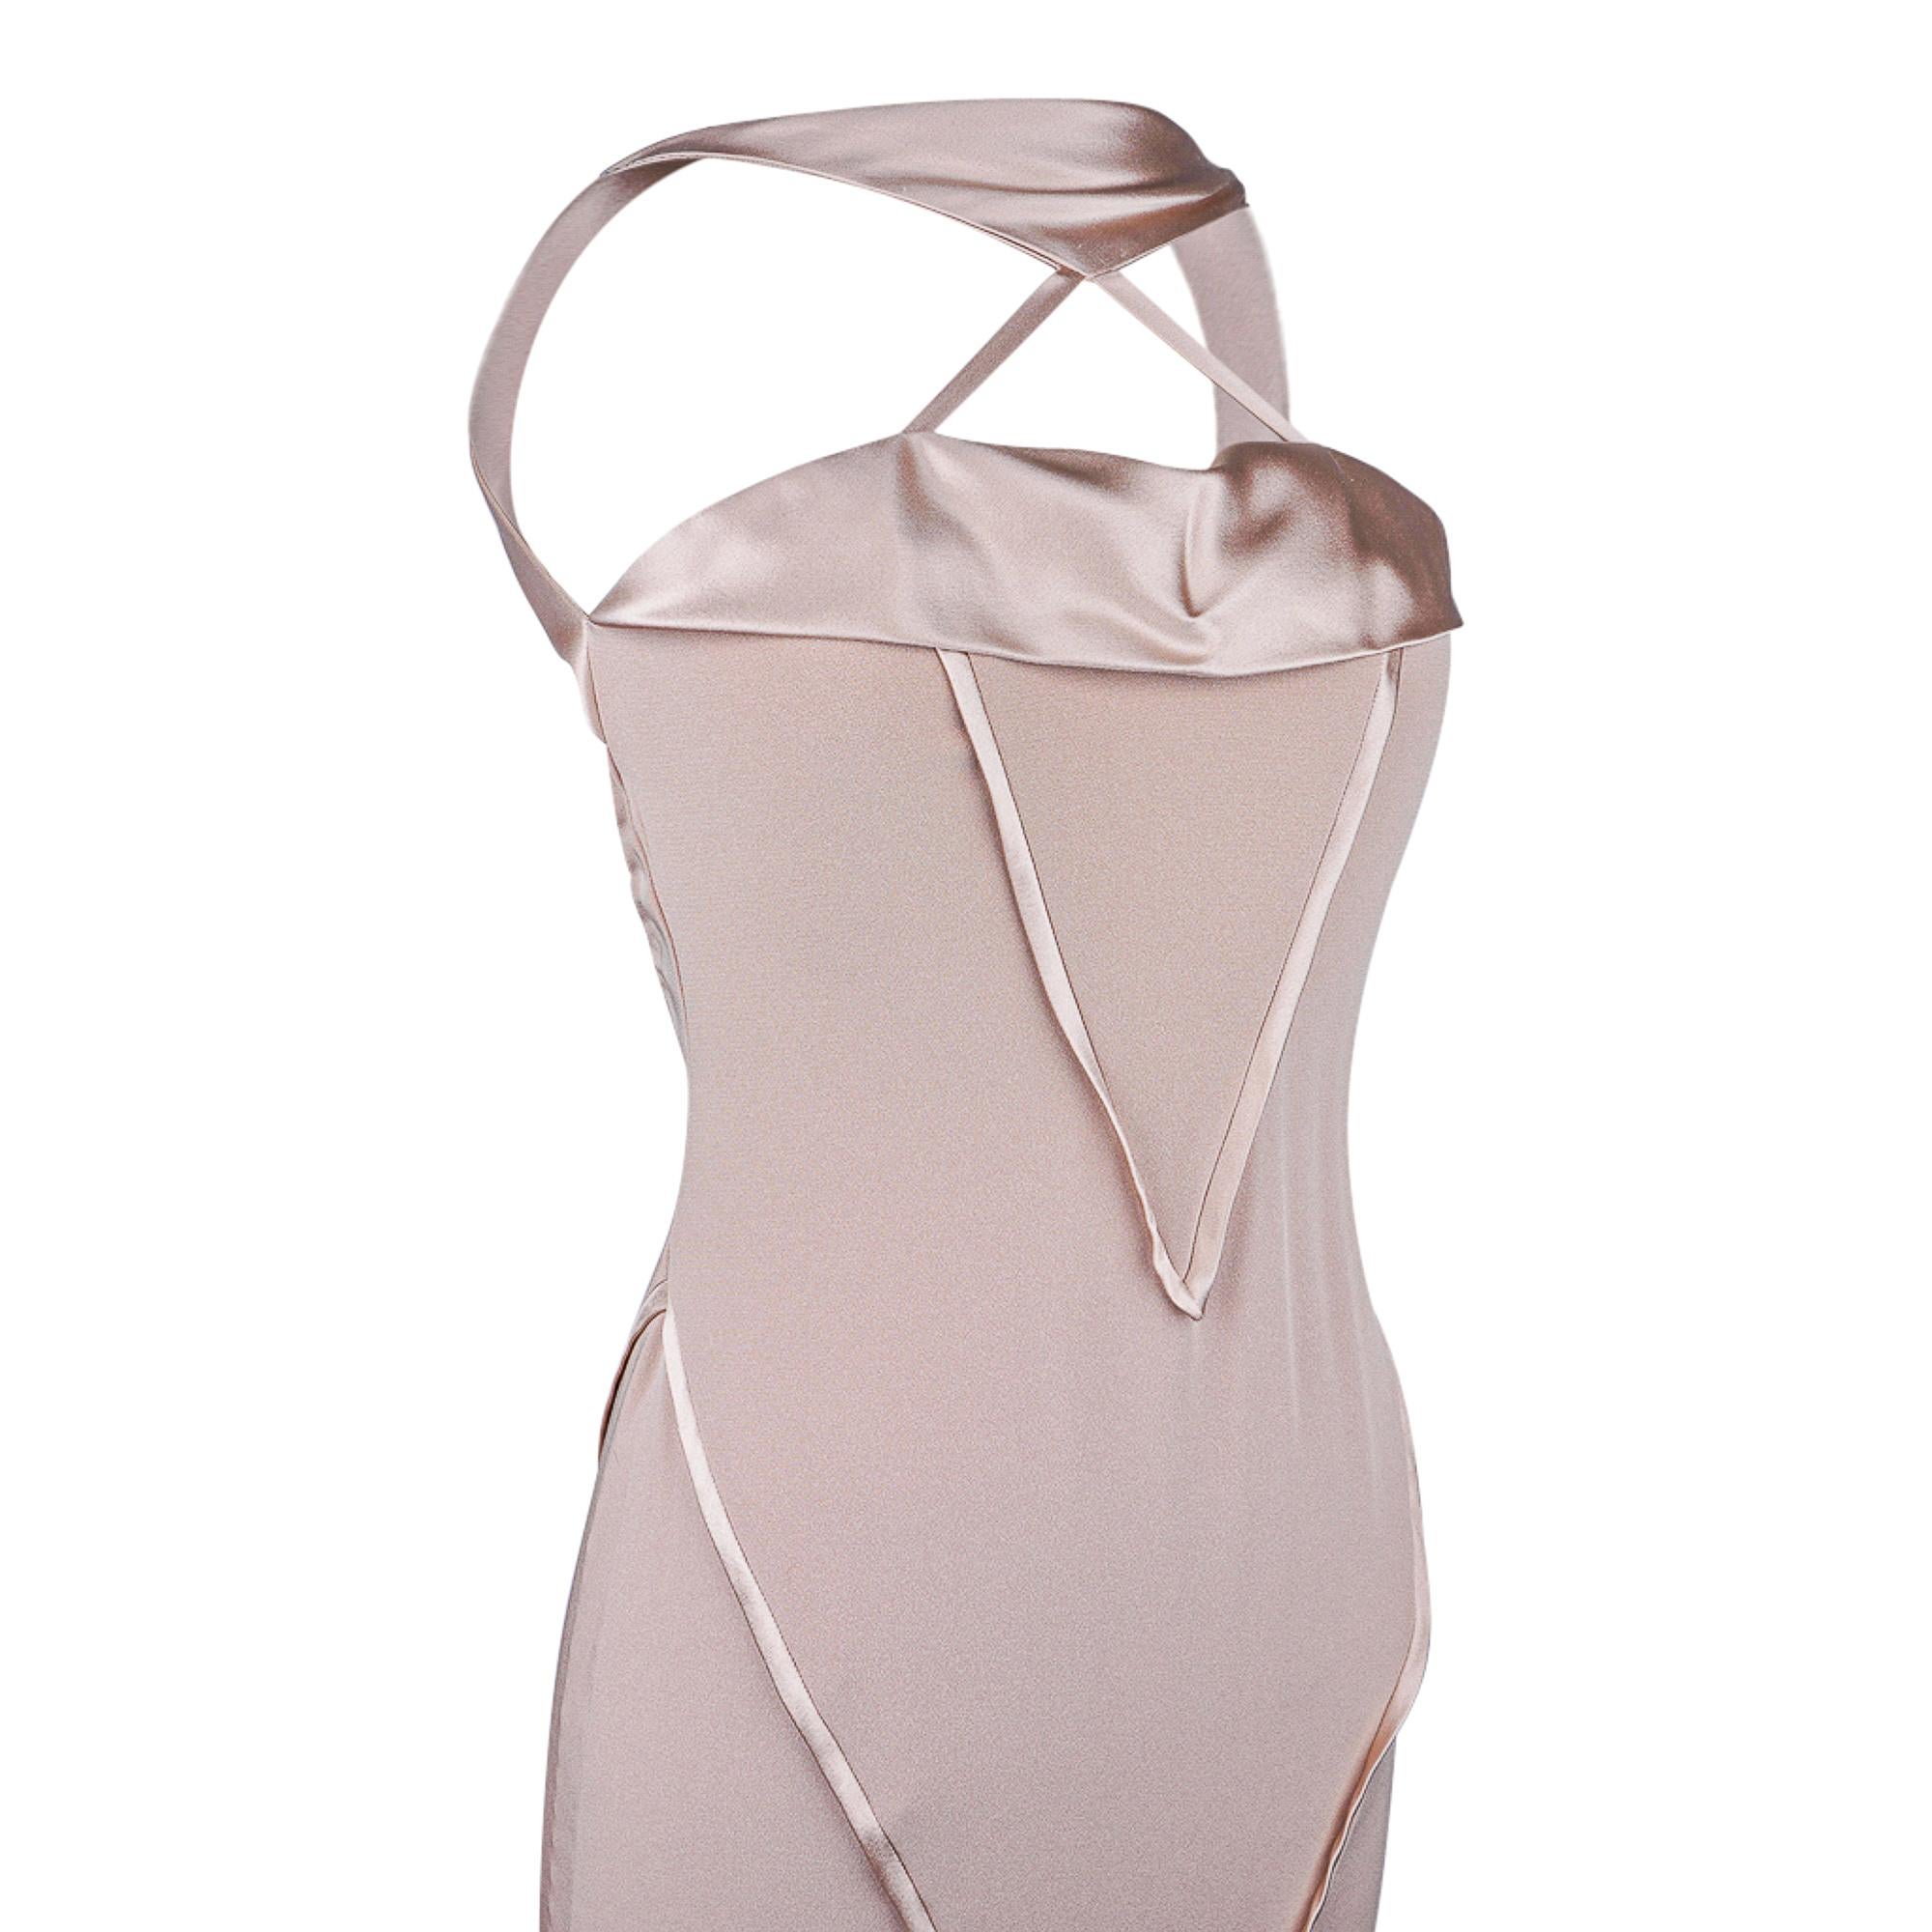 Garantiert authentisches J.Mendel Abendkleid im Neckholder-Stil.
Exquisites Nude mit einem Hauch von fleischigem Rosa.
Tief ausgeschnittener offener Rücken.
Schönes Detail am Ausschnitt.
Die dezente Ausbuchtung am Saum sorgt für einen koketten